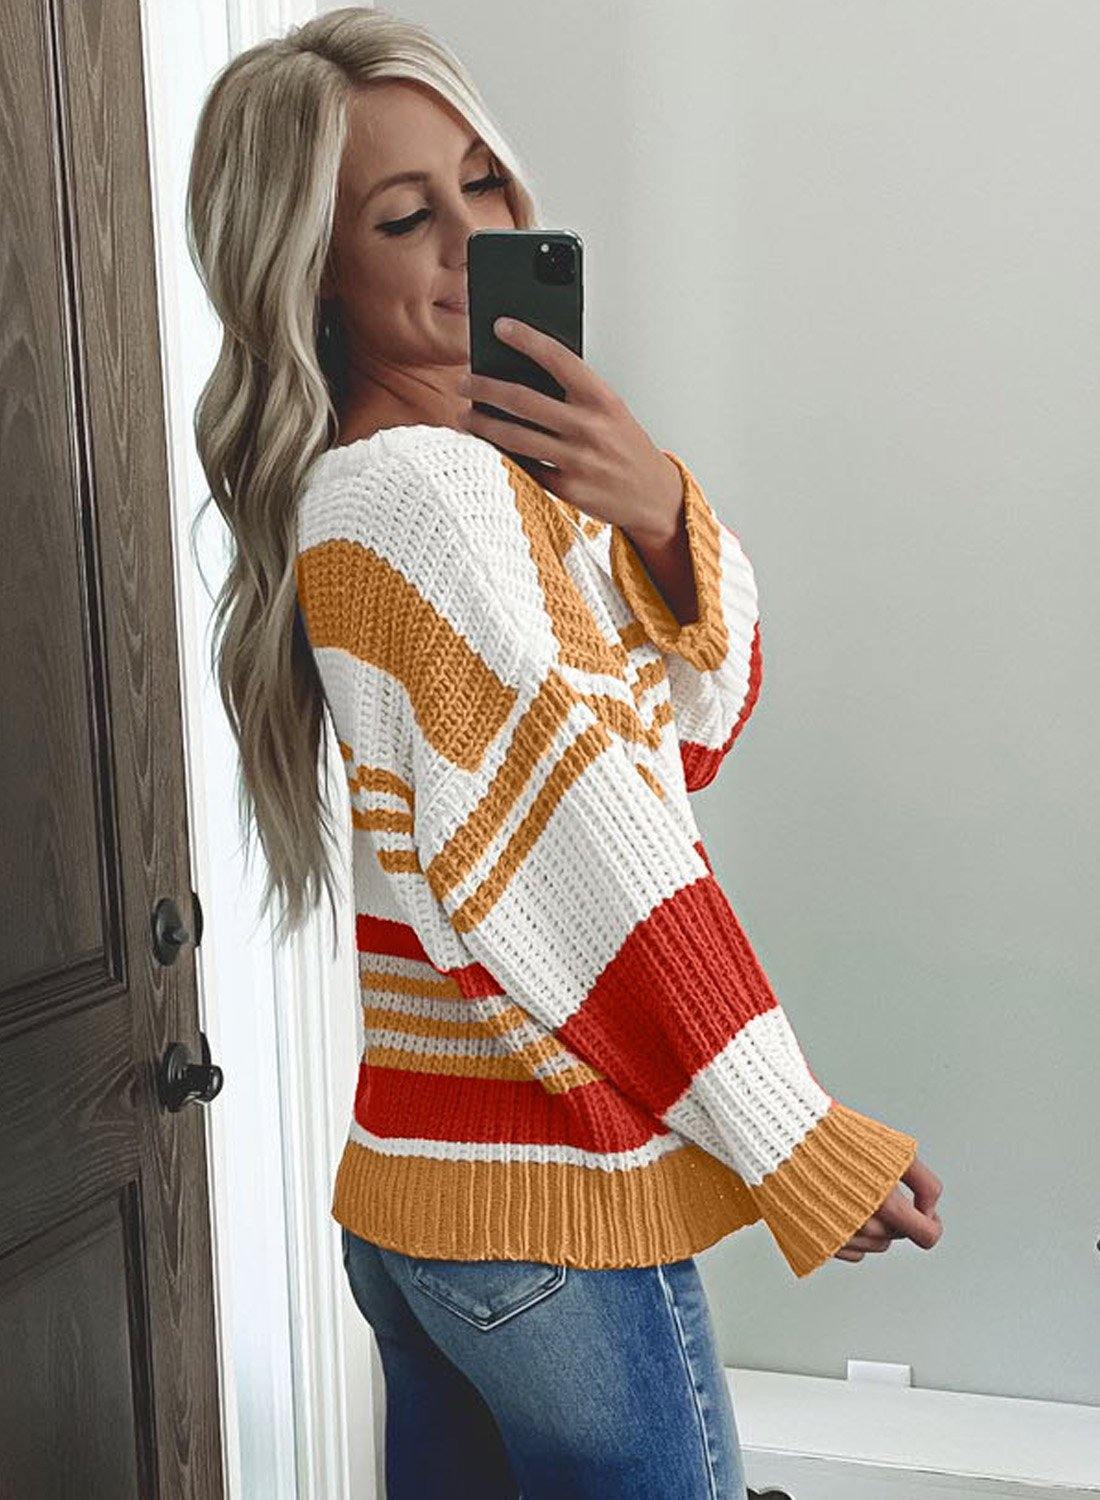 Striped Pattern Knit Sweater - L & M Kee, LLC